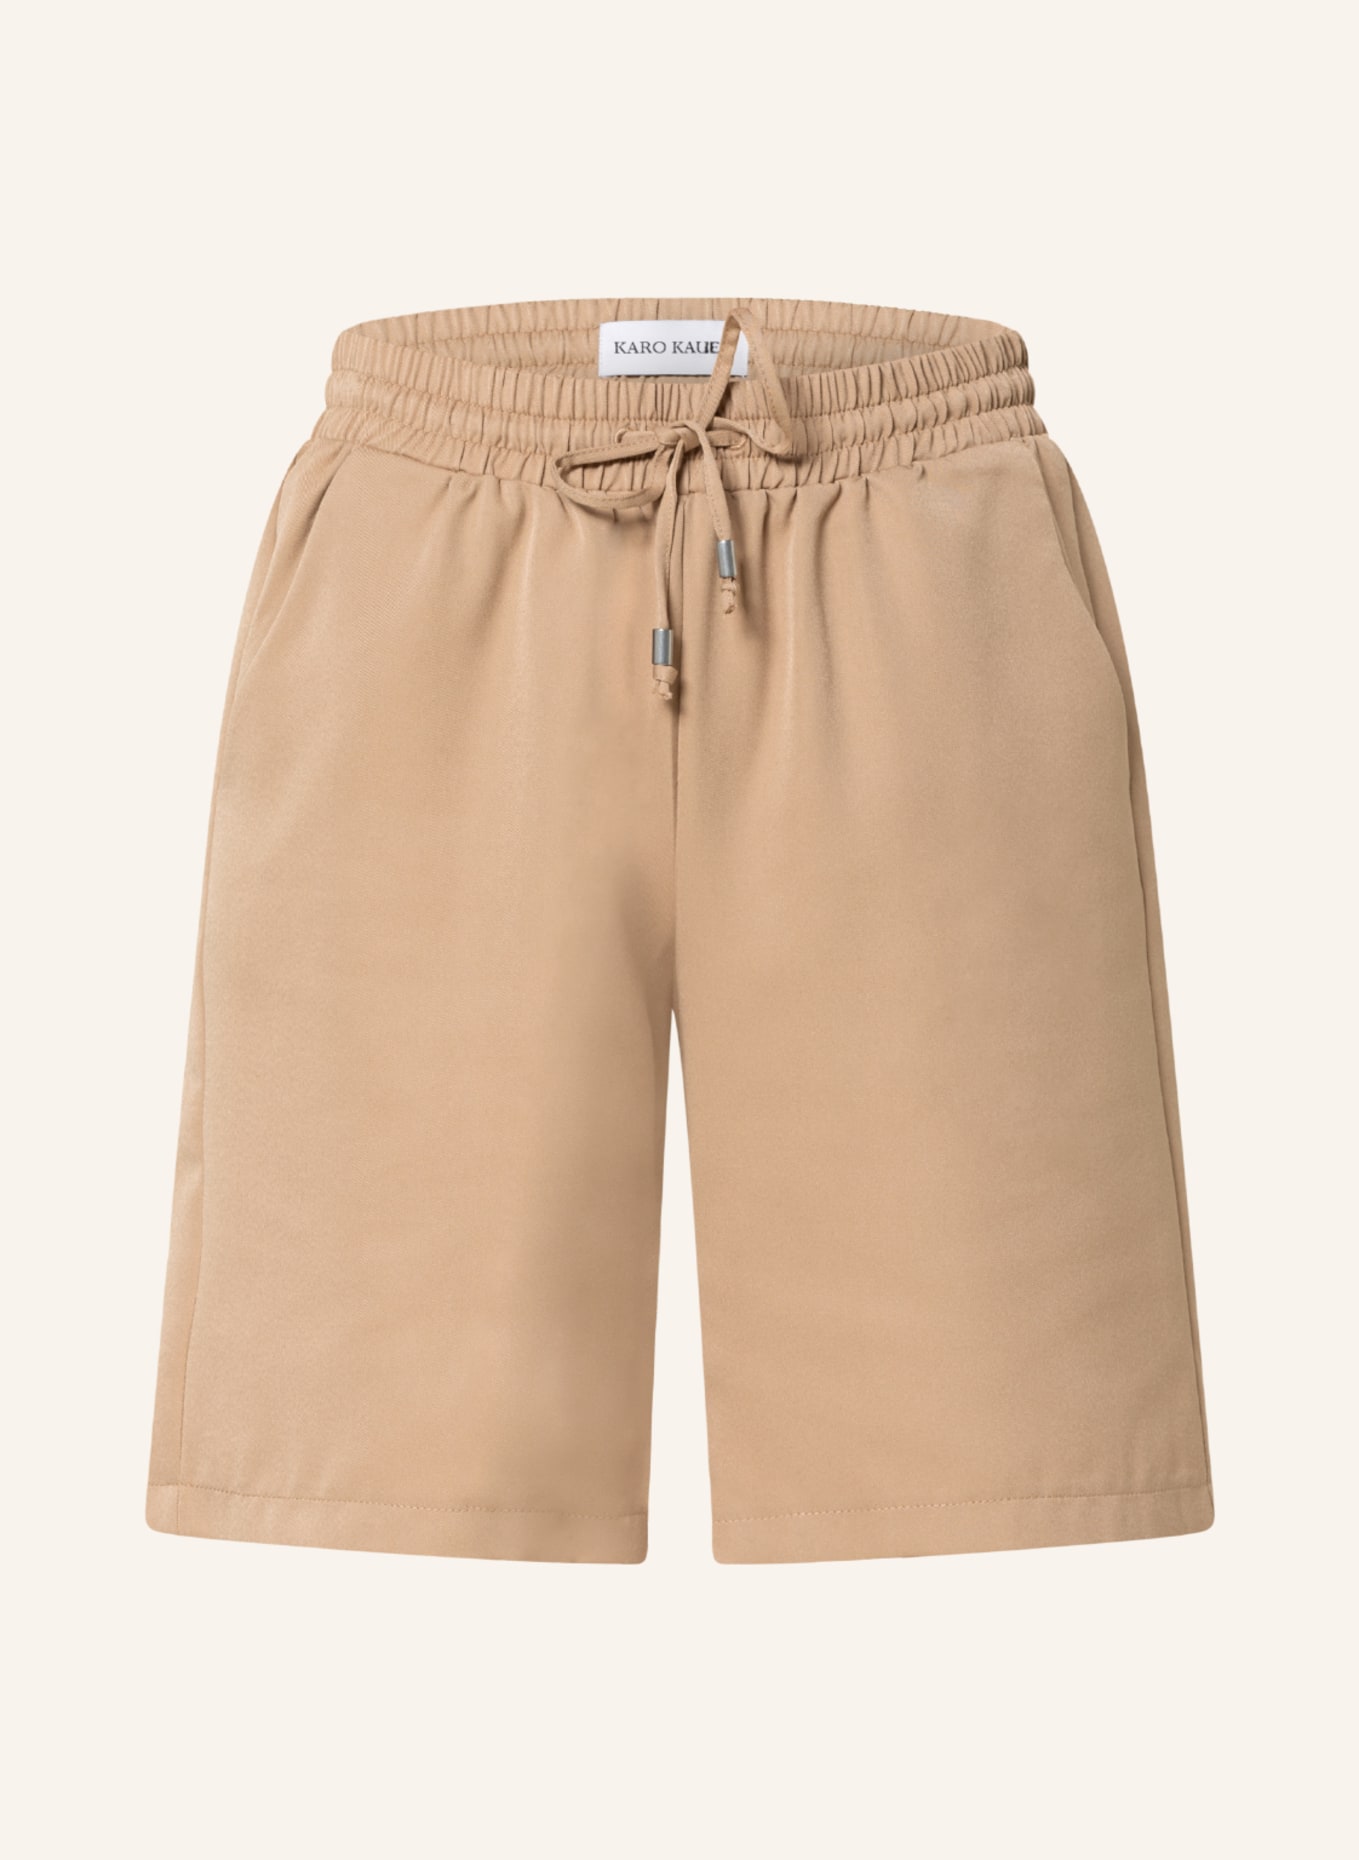 KARO KAUER Shorts, Farbe: BEIGE (Bild 1)